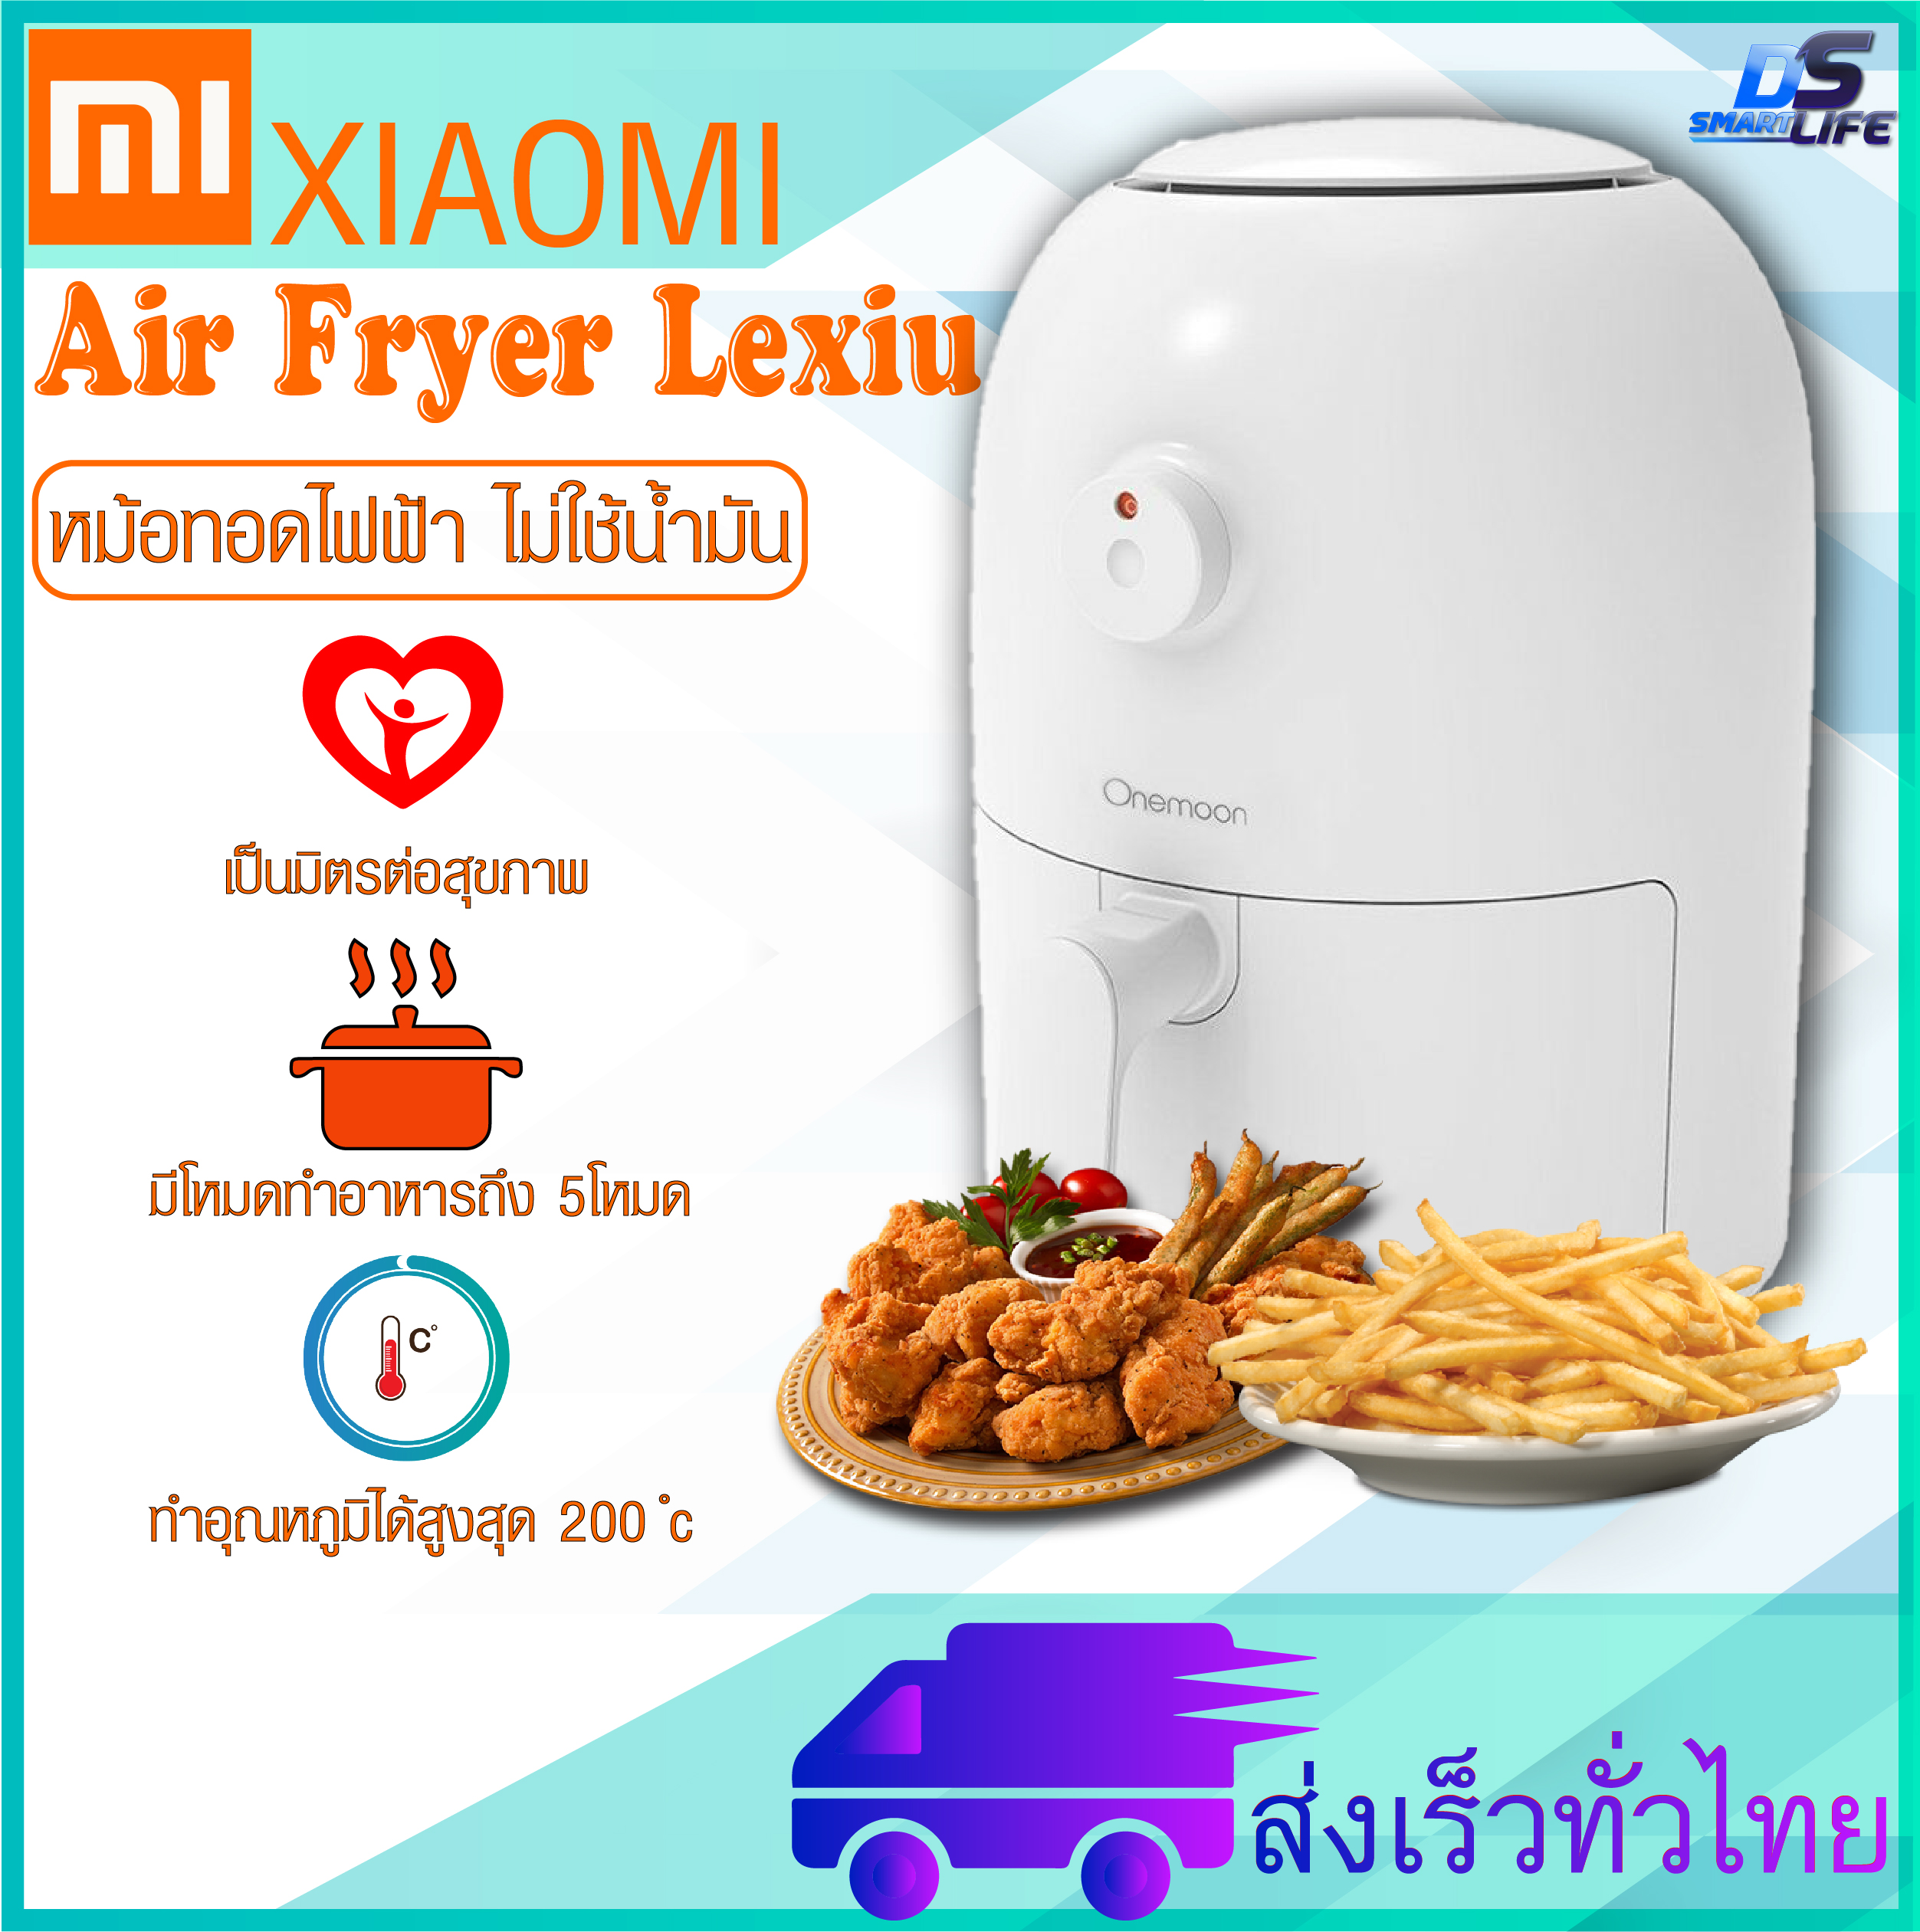 Xiaomi Air Fryer Lexiu - หม้อทอดไร้น้ำมัน หม้อทอดอัจฉริยะ หม้อทอดไฟฟ้า สามารถทอดอาหารโดนไม่ต้องใช้น้ำมัน แถม ปลั๊กแปลง [รับประกันร้าน 6 เดือน]